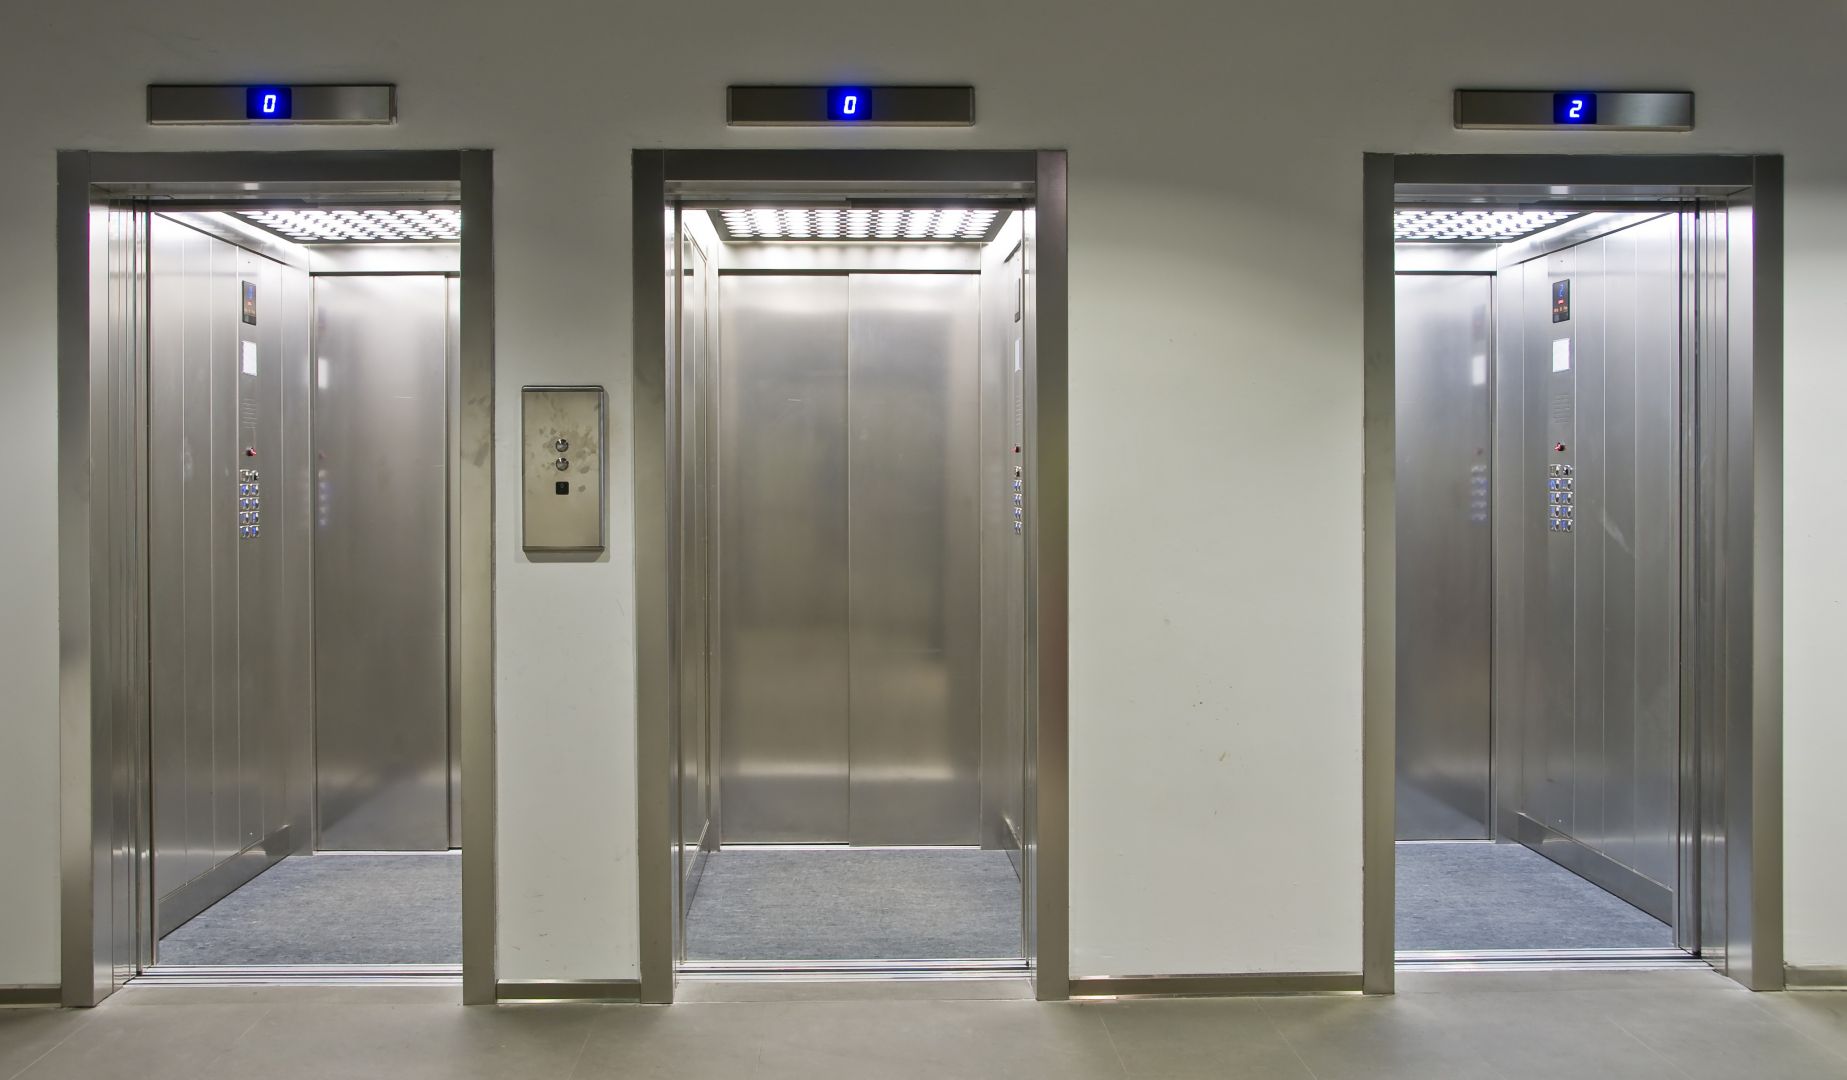 Poptávka na elektroinstalaci požárního zabezpečení výtahu (Výtahy a servis) - Praha